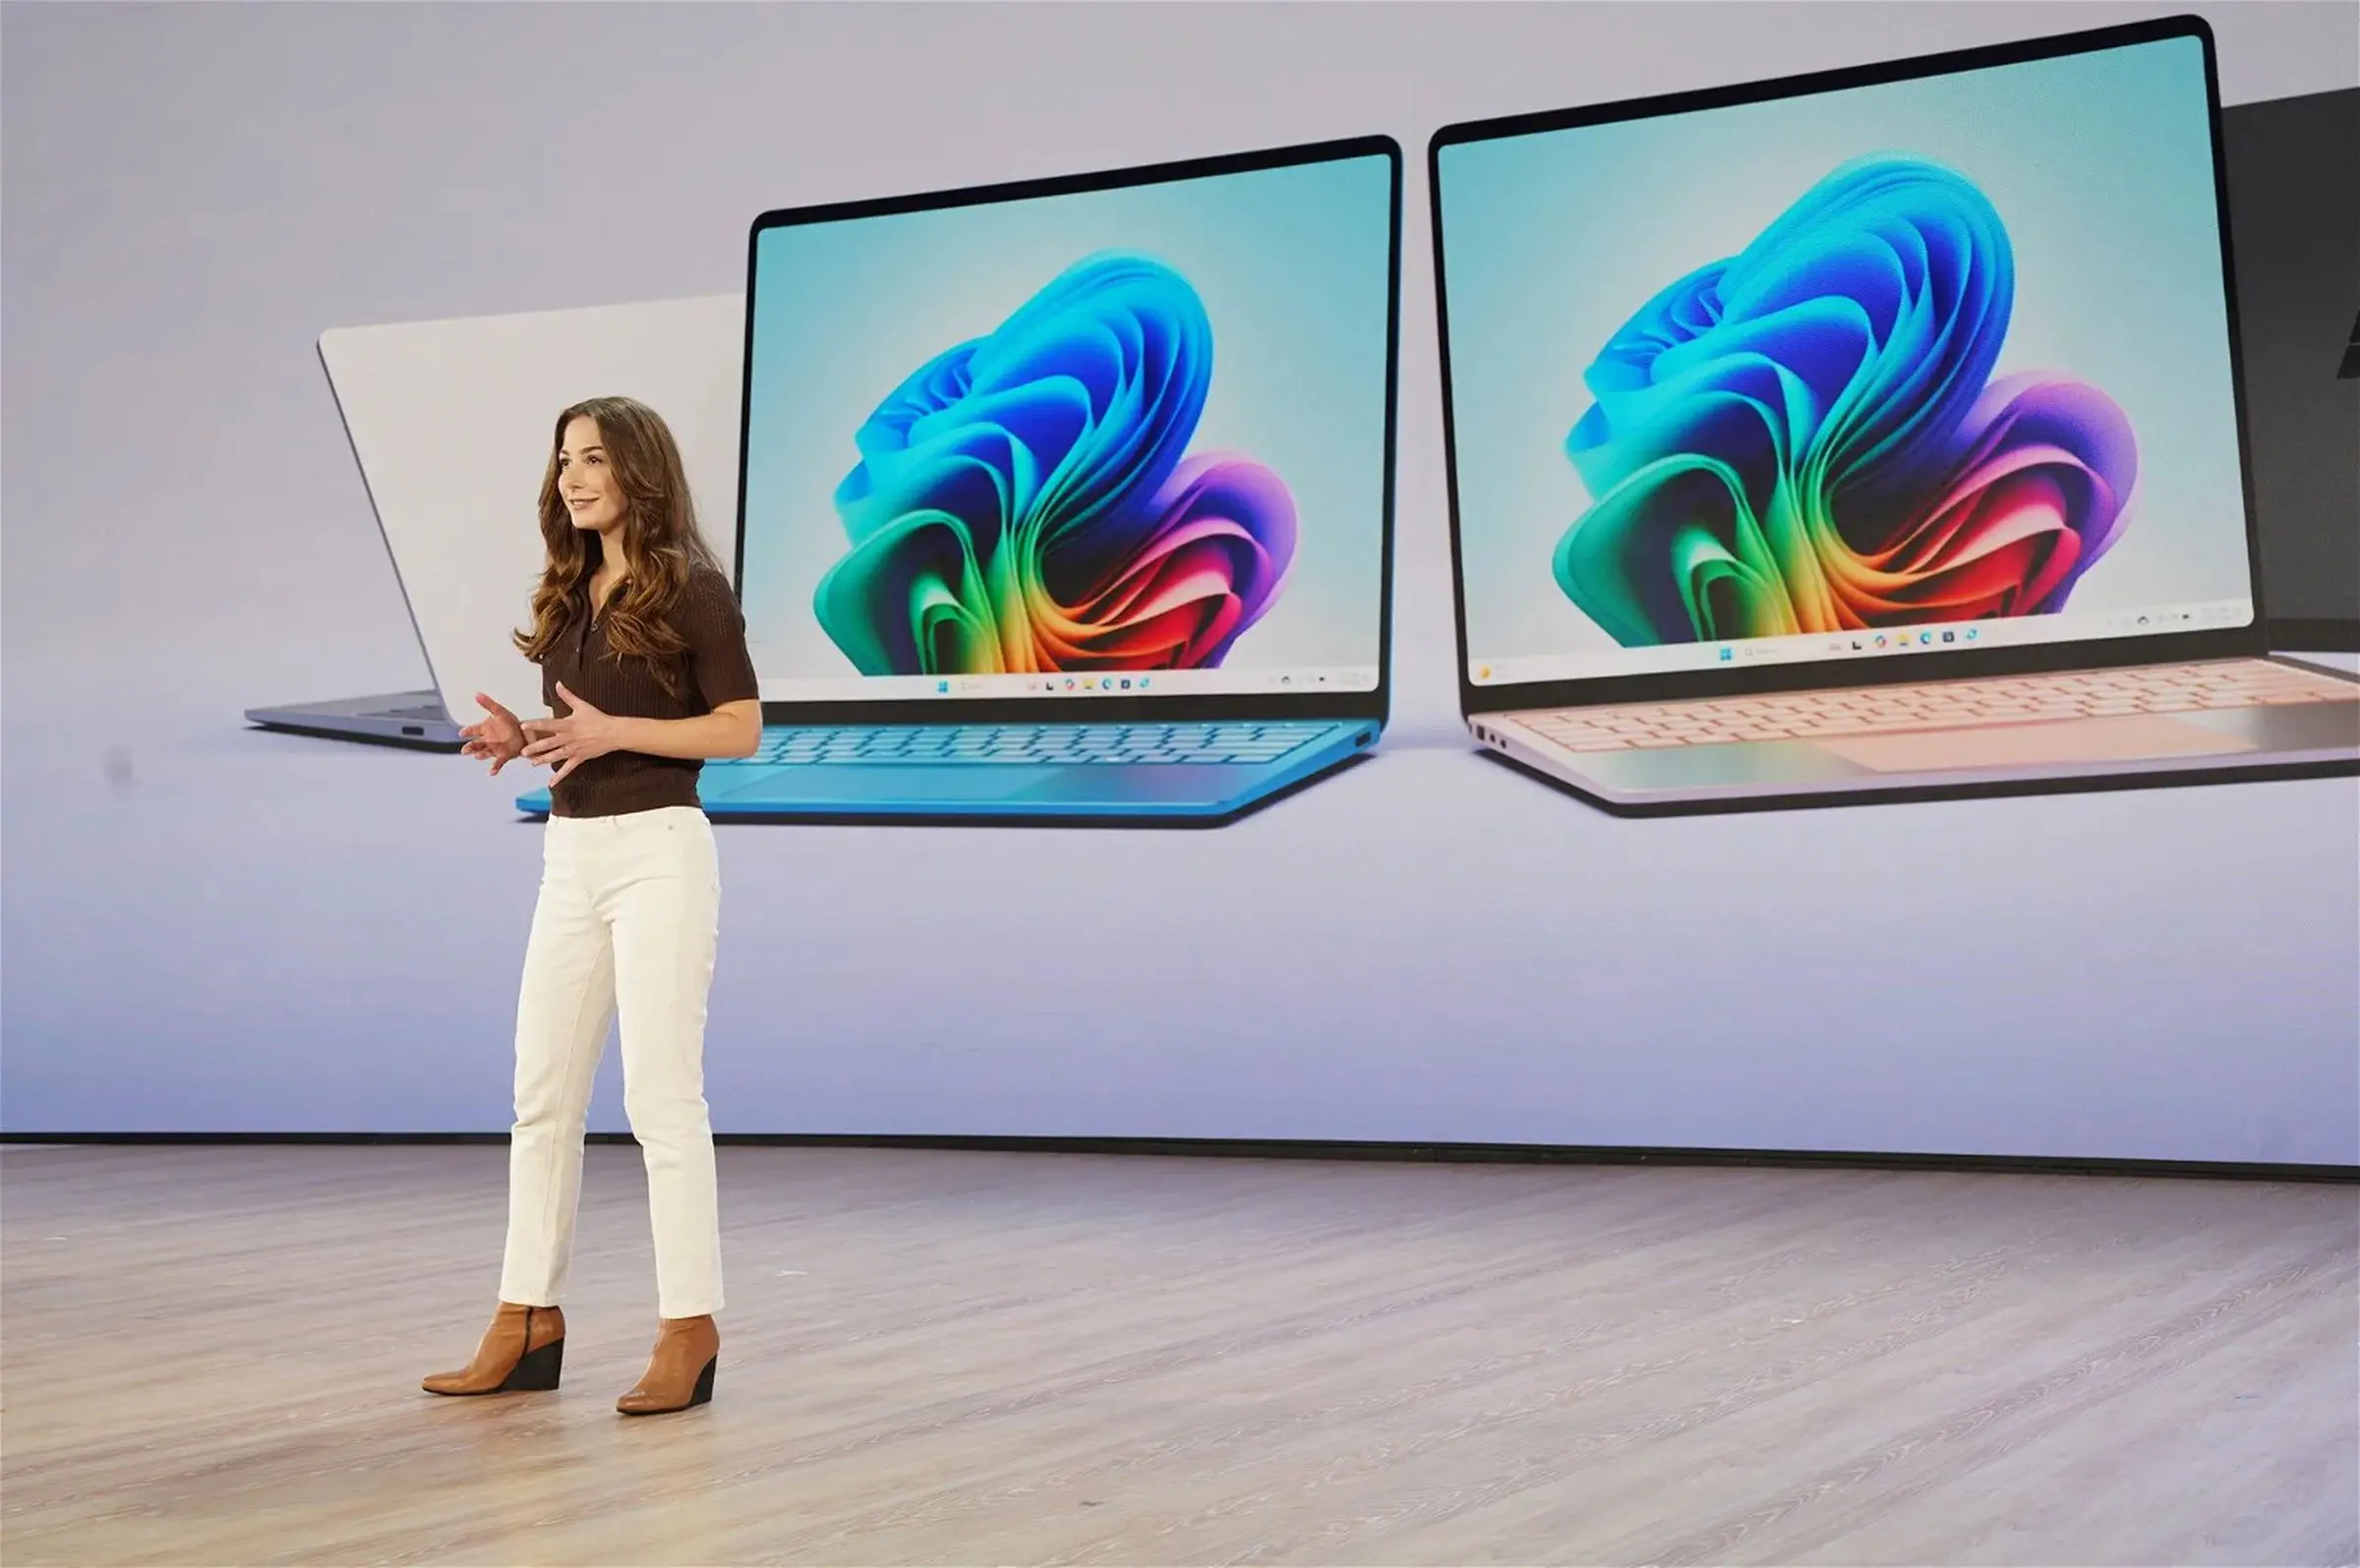 Tổng hợp 6 điểm nhấn tại sự kiện Microsoft Surface - Chính thức mở ra kỷ nguyên mới của PC chạy AI